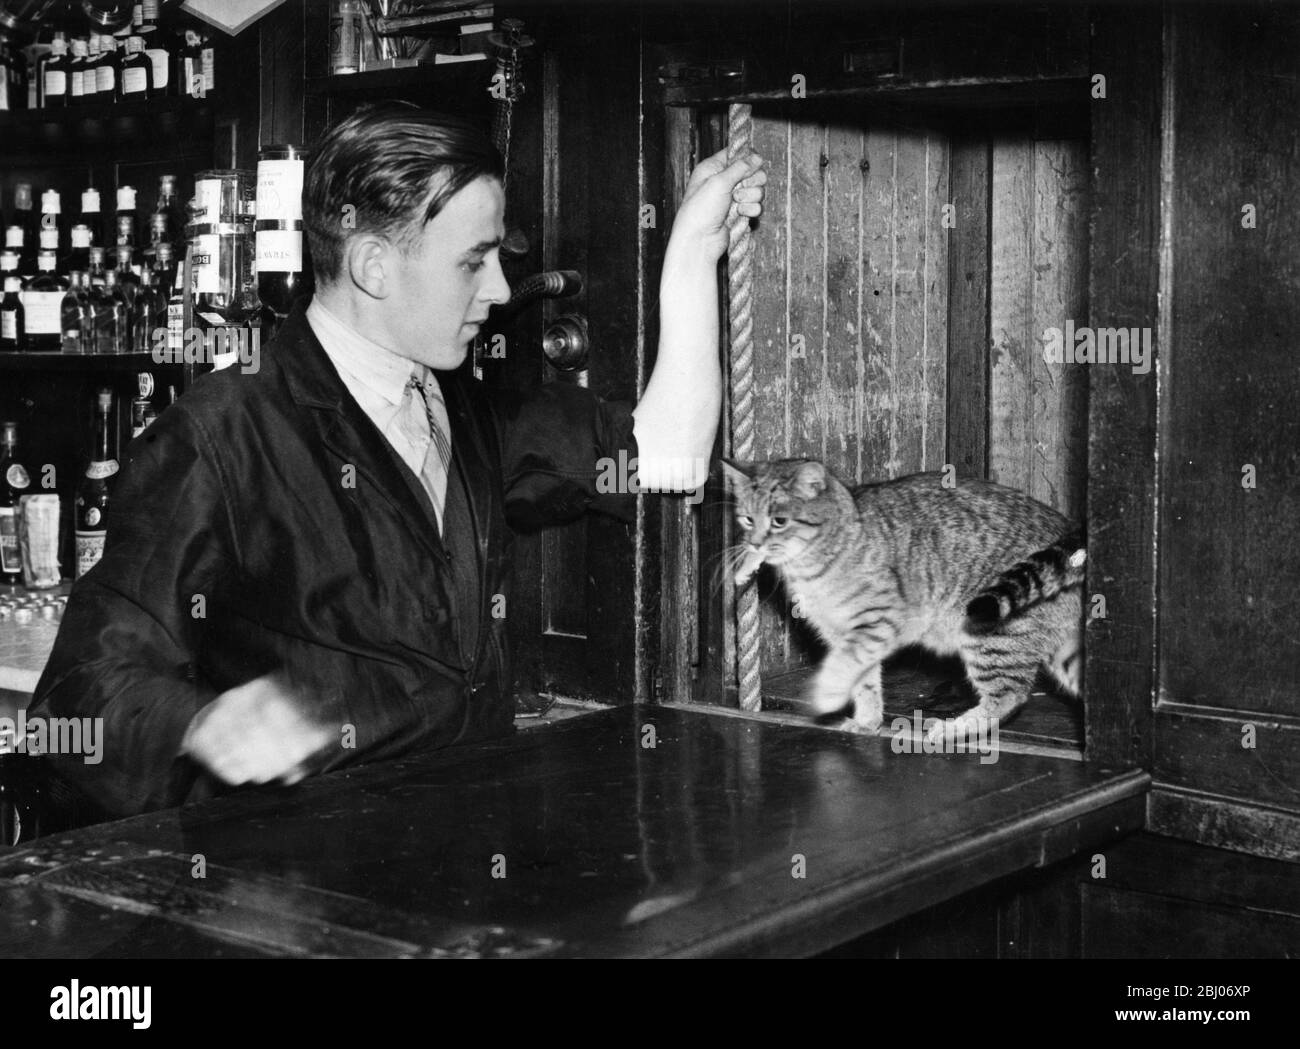 El gato residente toma un ascensor hasta el bar. Foto de stock